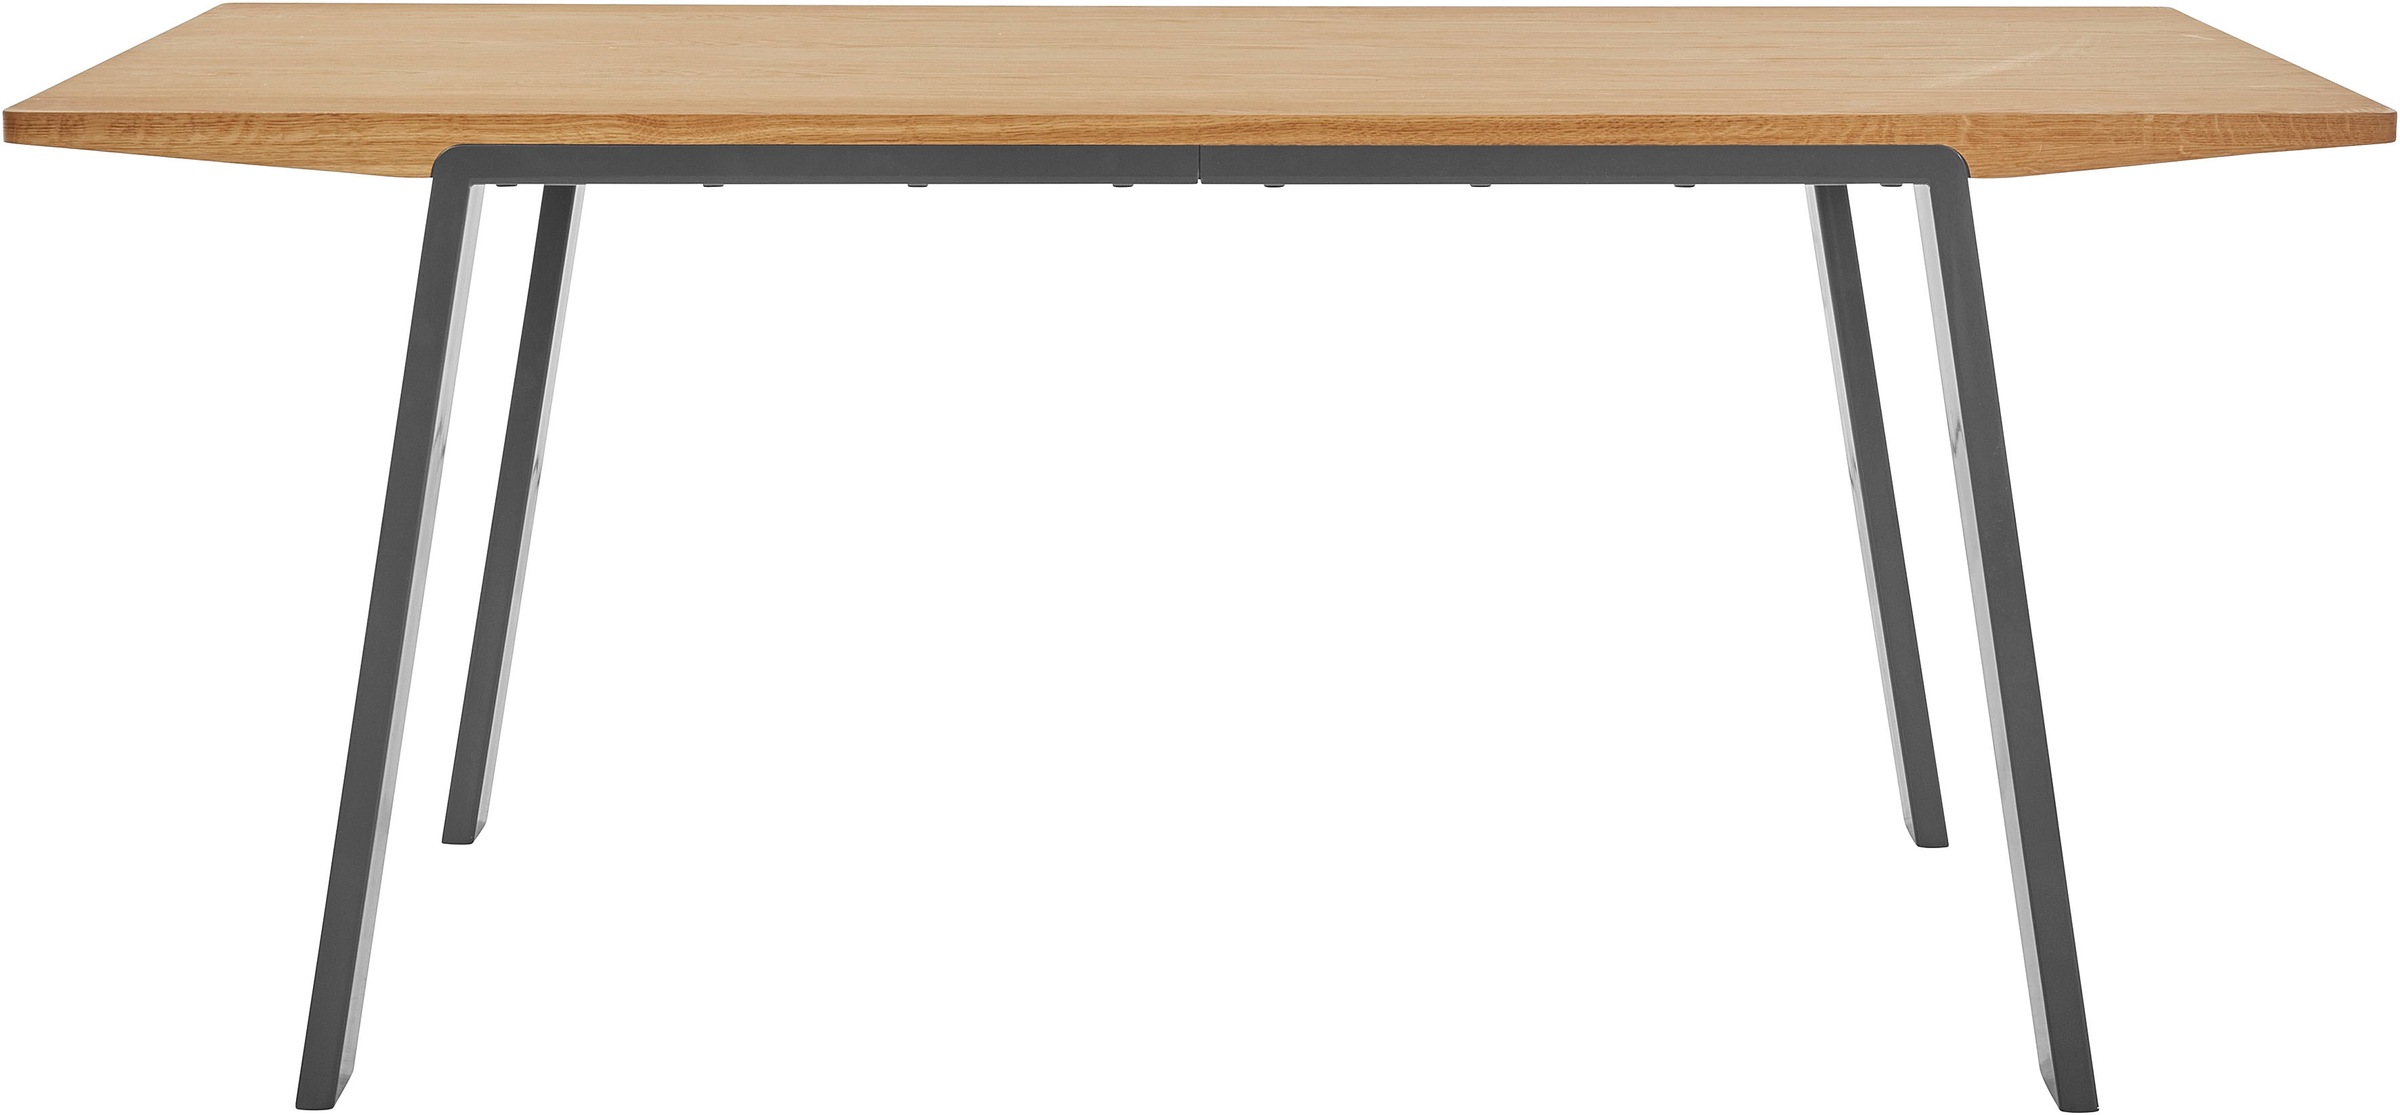 GOODproduct Esstisch »Flemming«, Massivholz Eiche, 175 cm oder 225 cm, elegant gewölbte Tischplatte